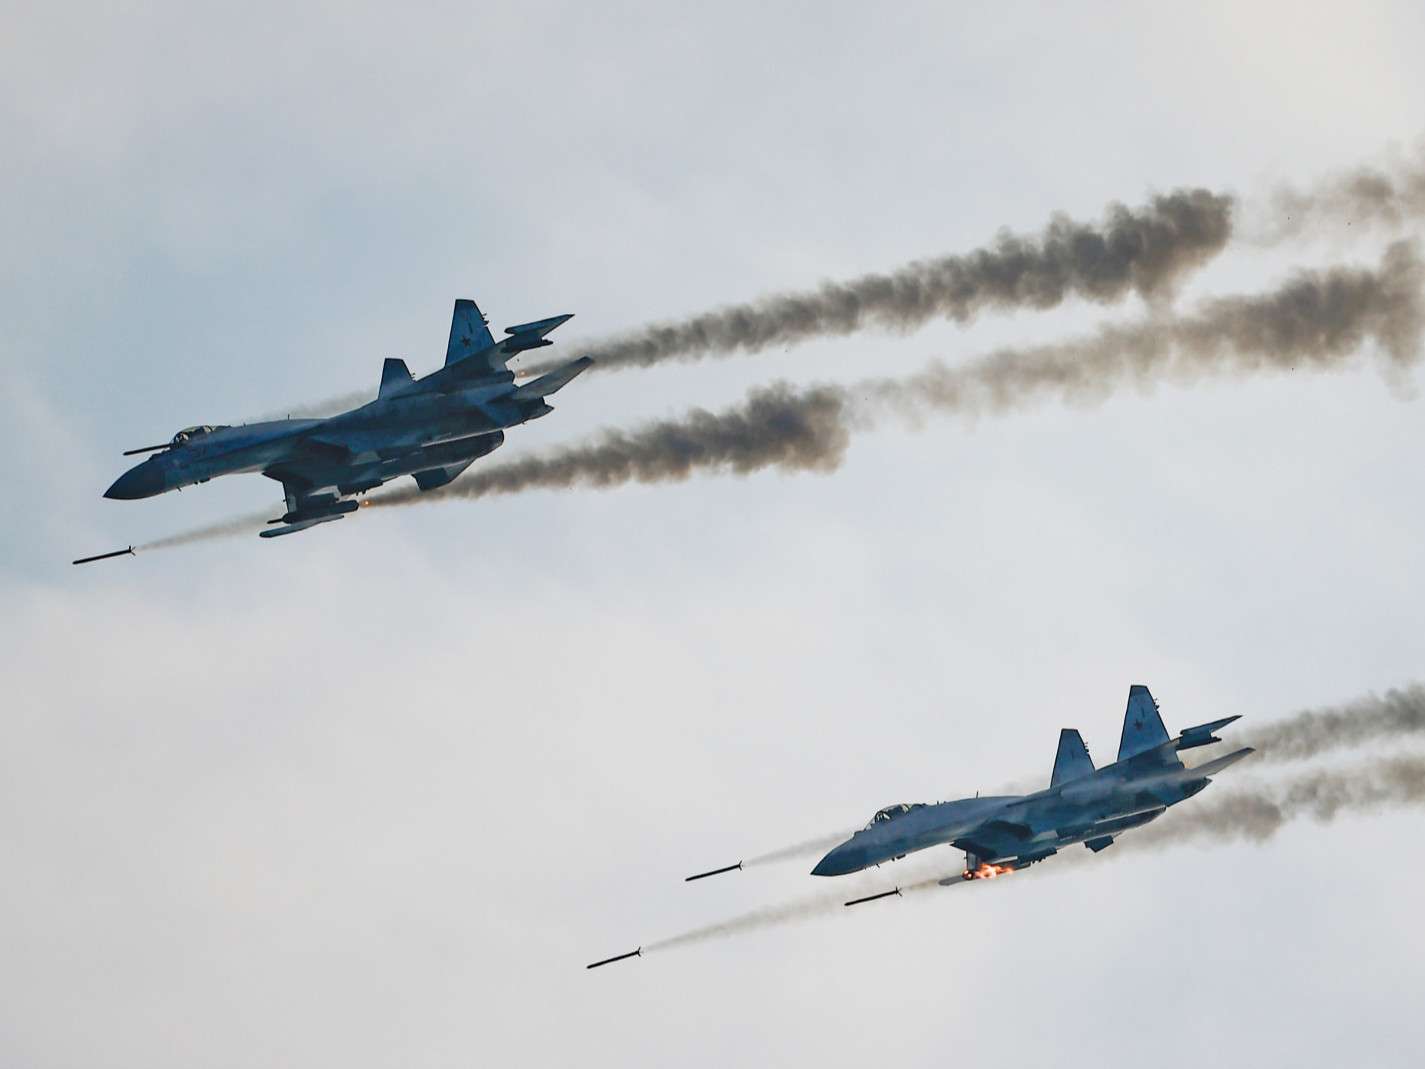 “Оросын нисэх онгоцнууд Украины хамгаалалтын системийг давж чадахгүй байна” гэж Их Британийн БХЯ мэдэгджээ